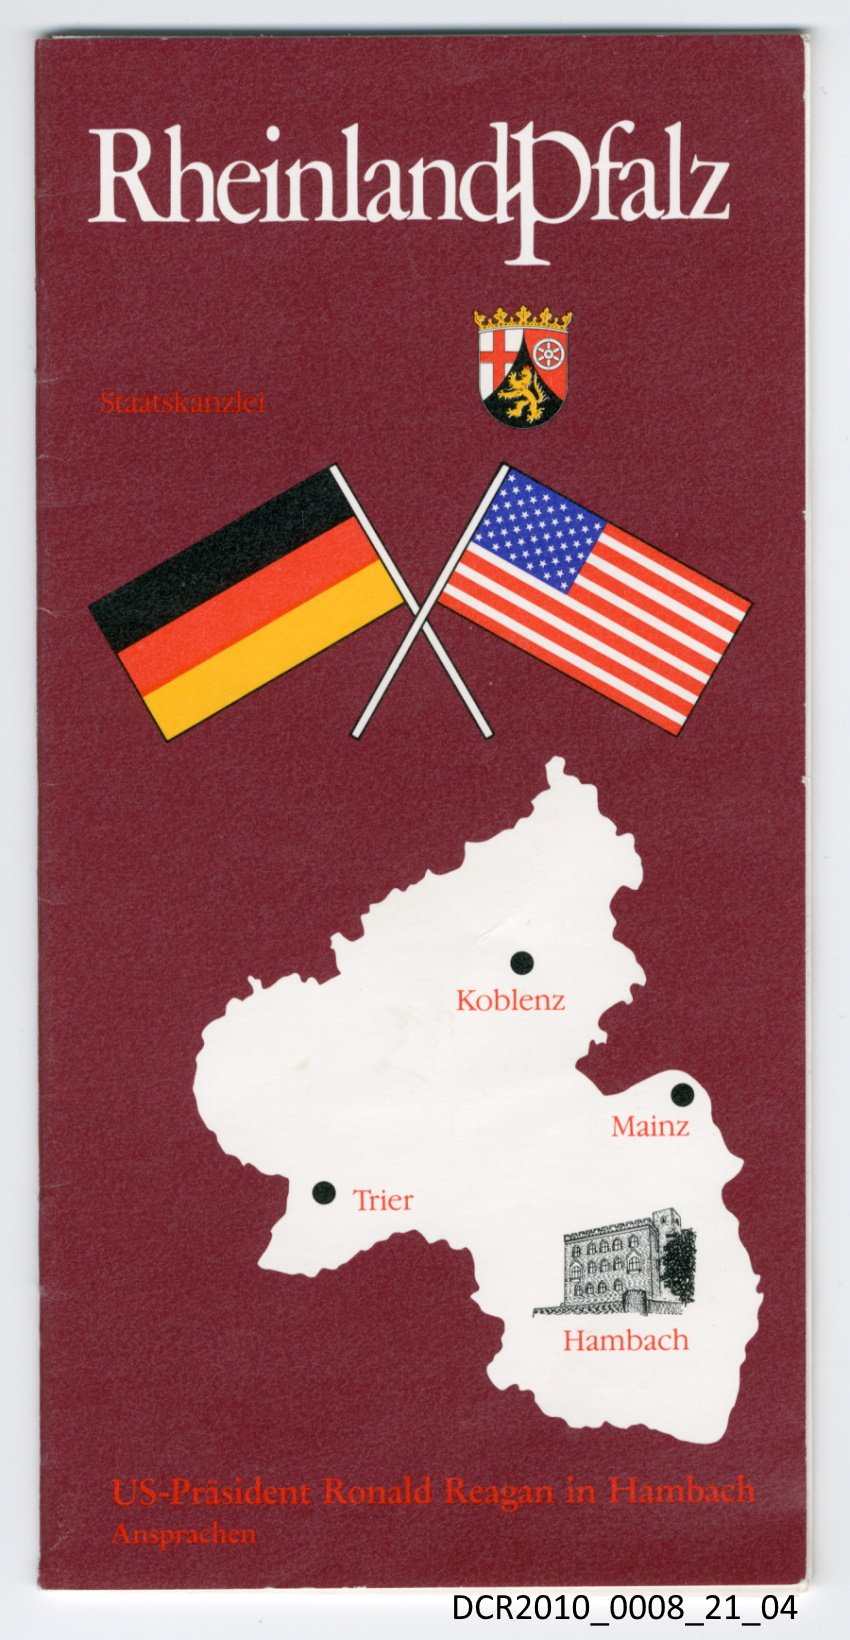 Broschüre mit den Ansprachen von Bernhard Vogel, Helmut Kohl und Ronald Reagan ("dc-r" docu center ramstein RR-F)